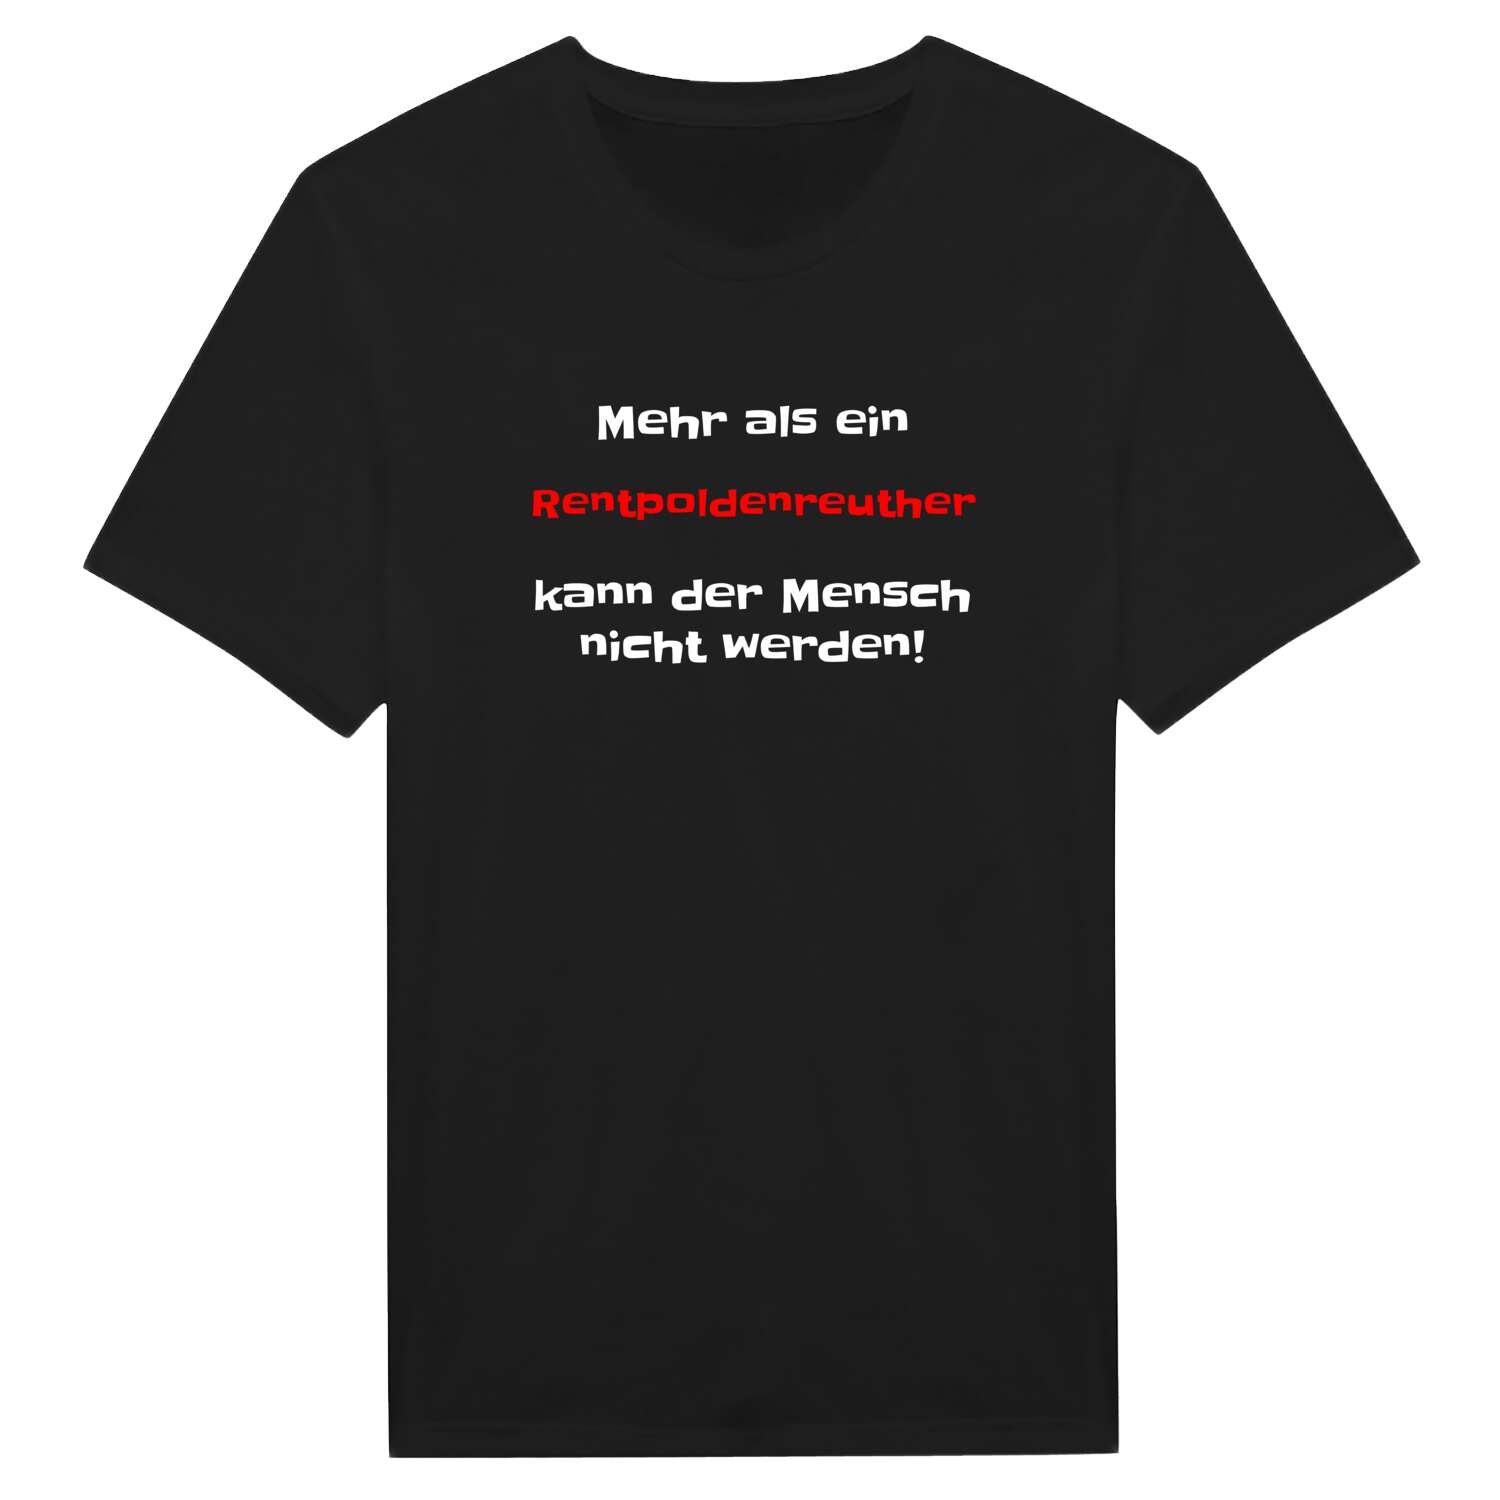 Rentpoldenreuth T-Shirt »Mehr als ein«